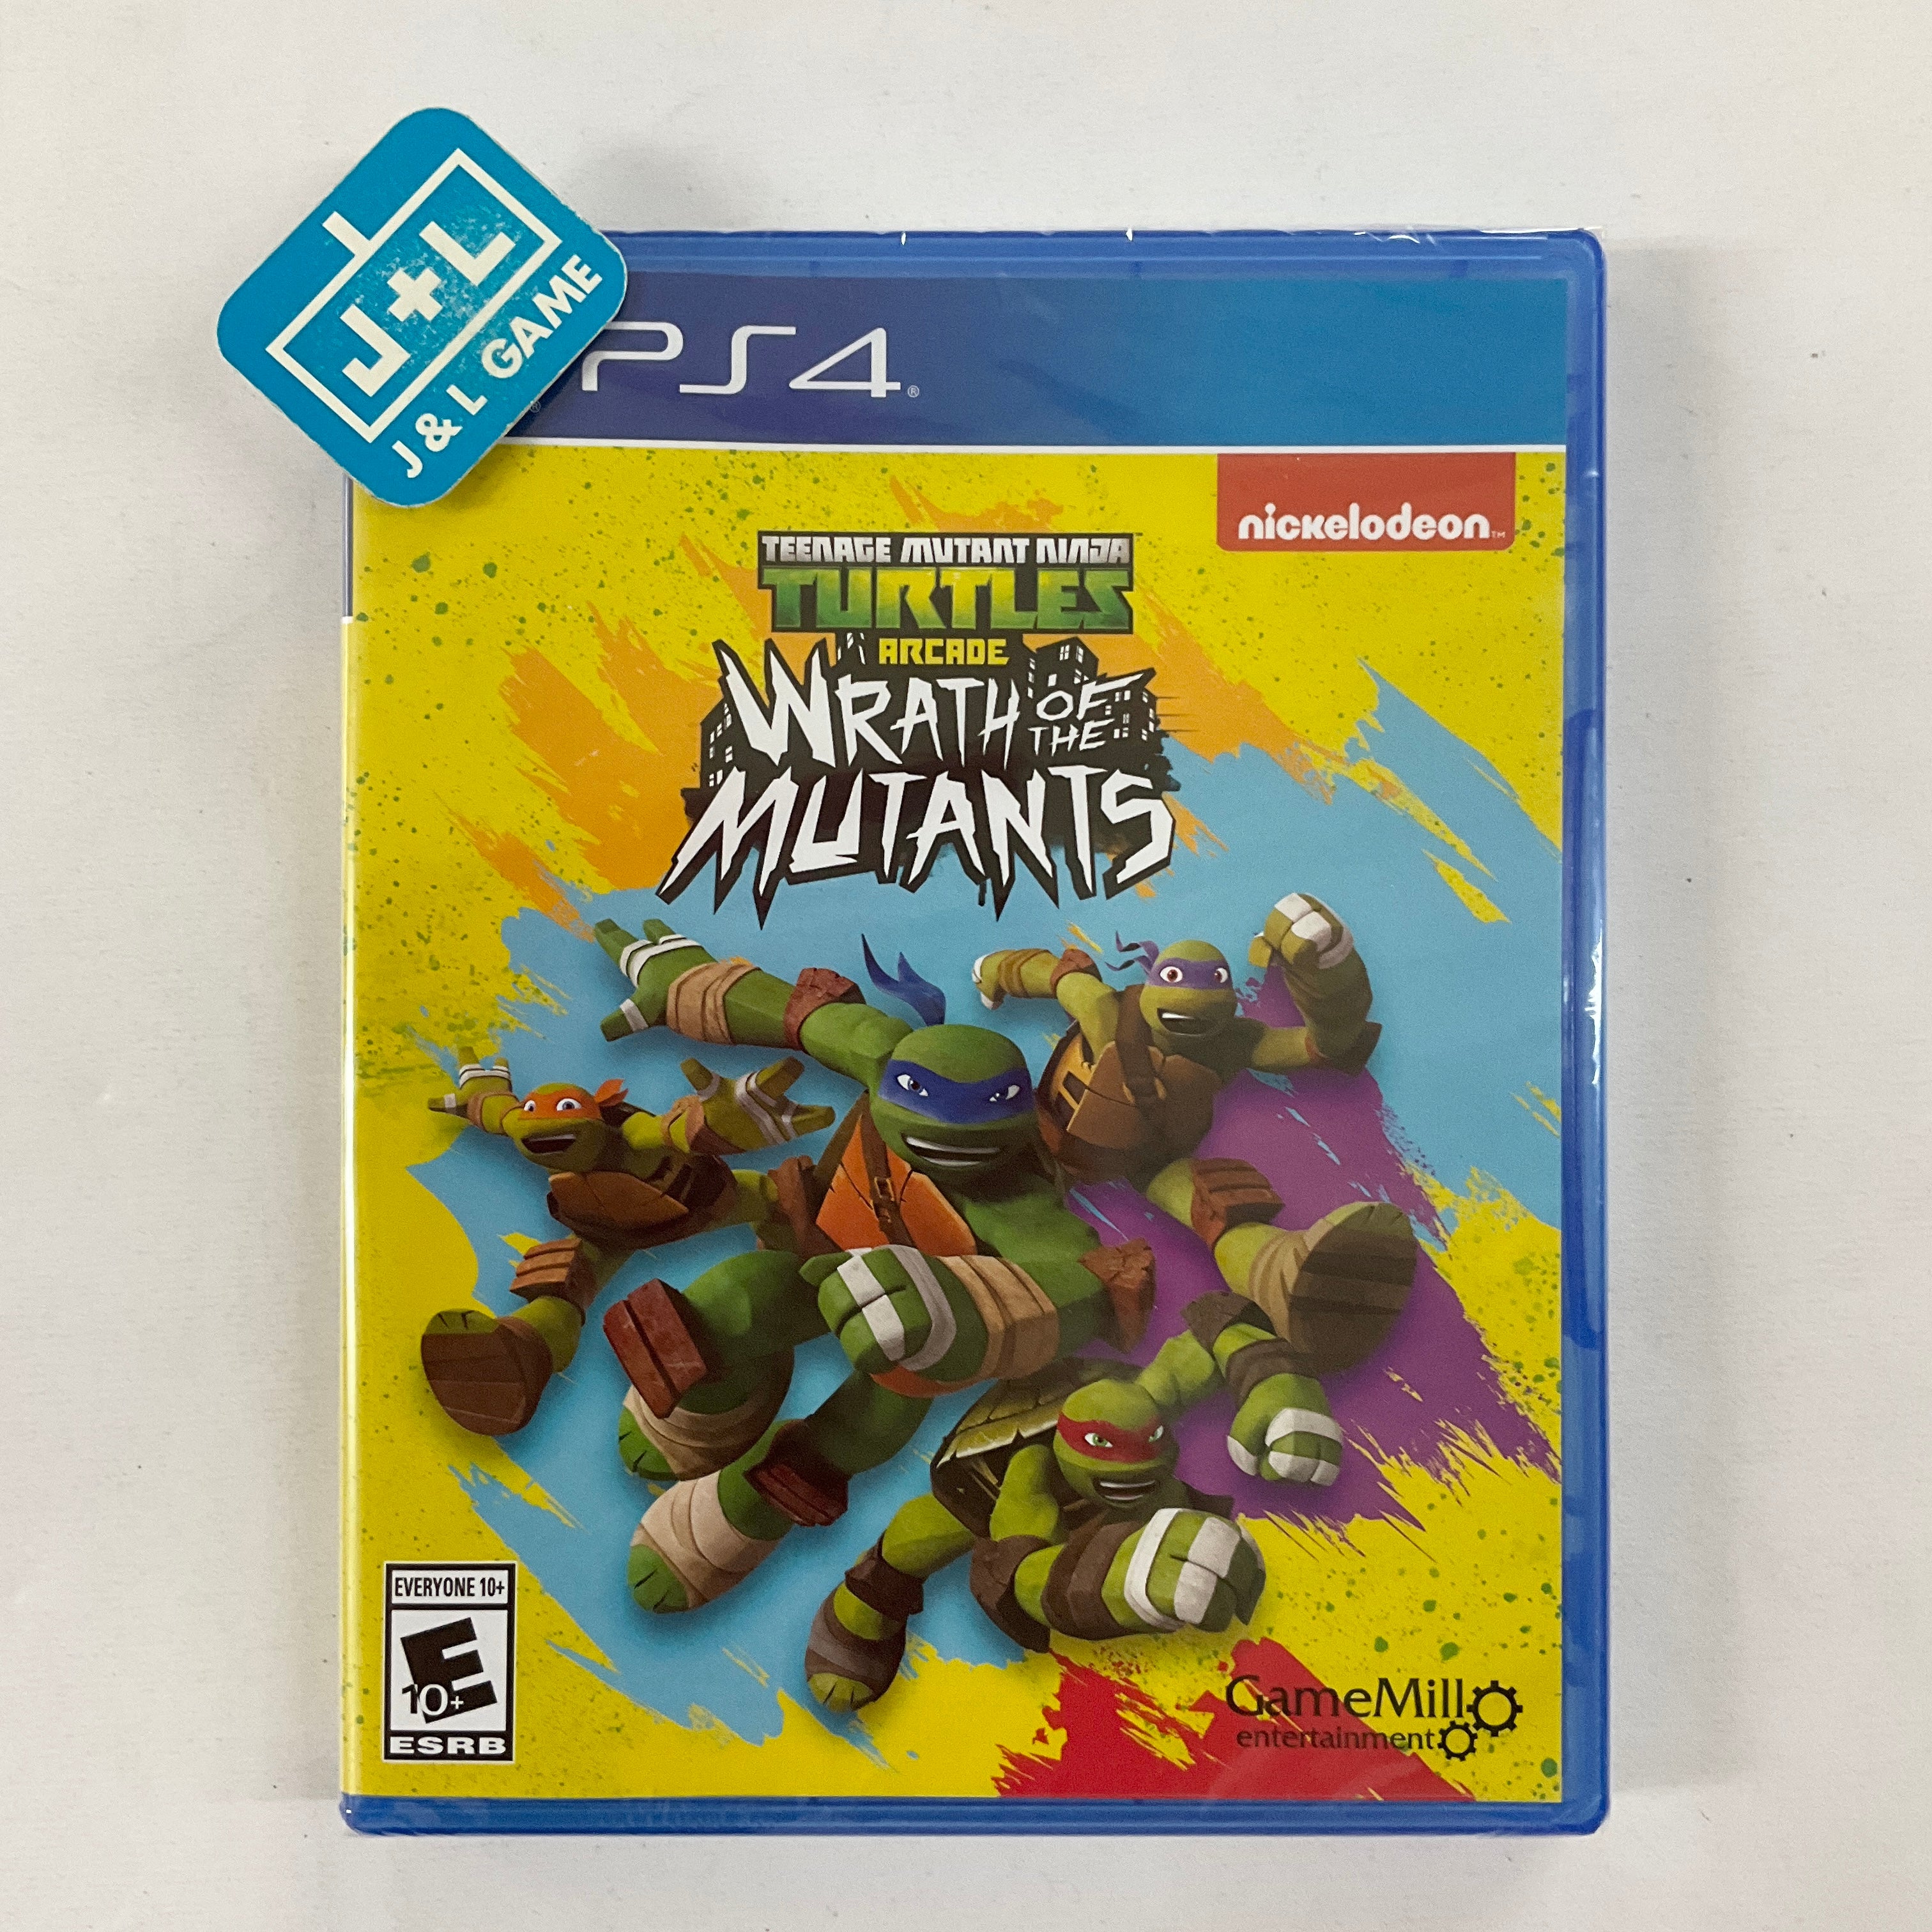 Teenage Mutant Ninja Turtles Arcade: Wrath of the Mutants - (PS4) PlayStation 4